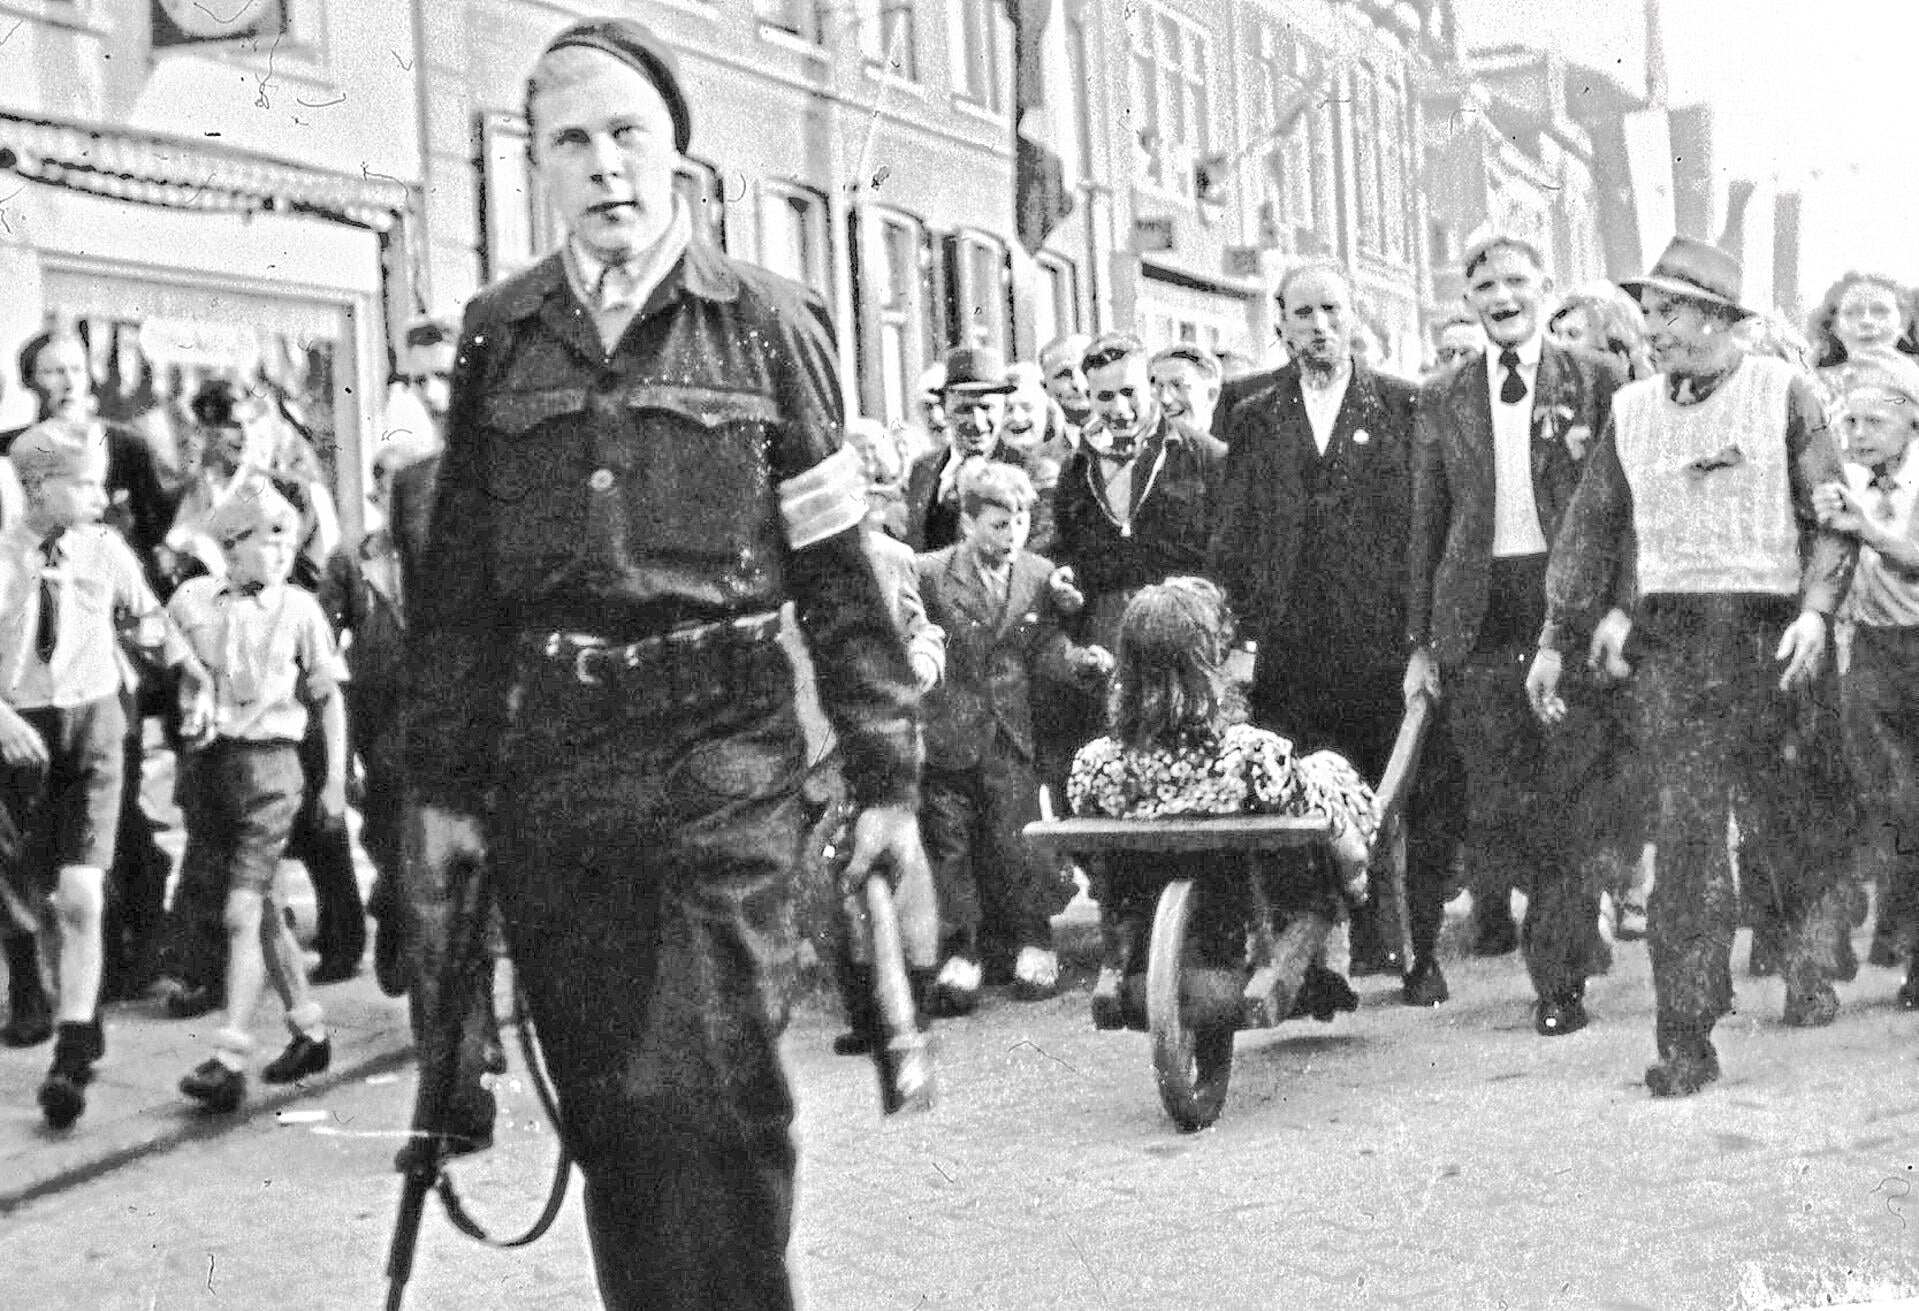 De meest iconische bevrijdingsfoto van WOII in Veenendaal: een vrouw wordt in de Hoofdstraat opgebracht.